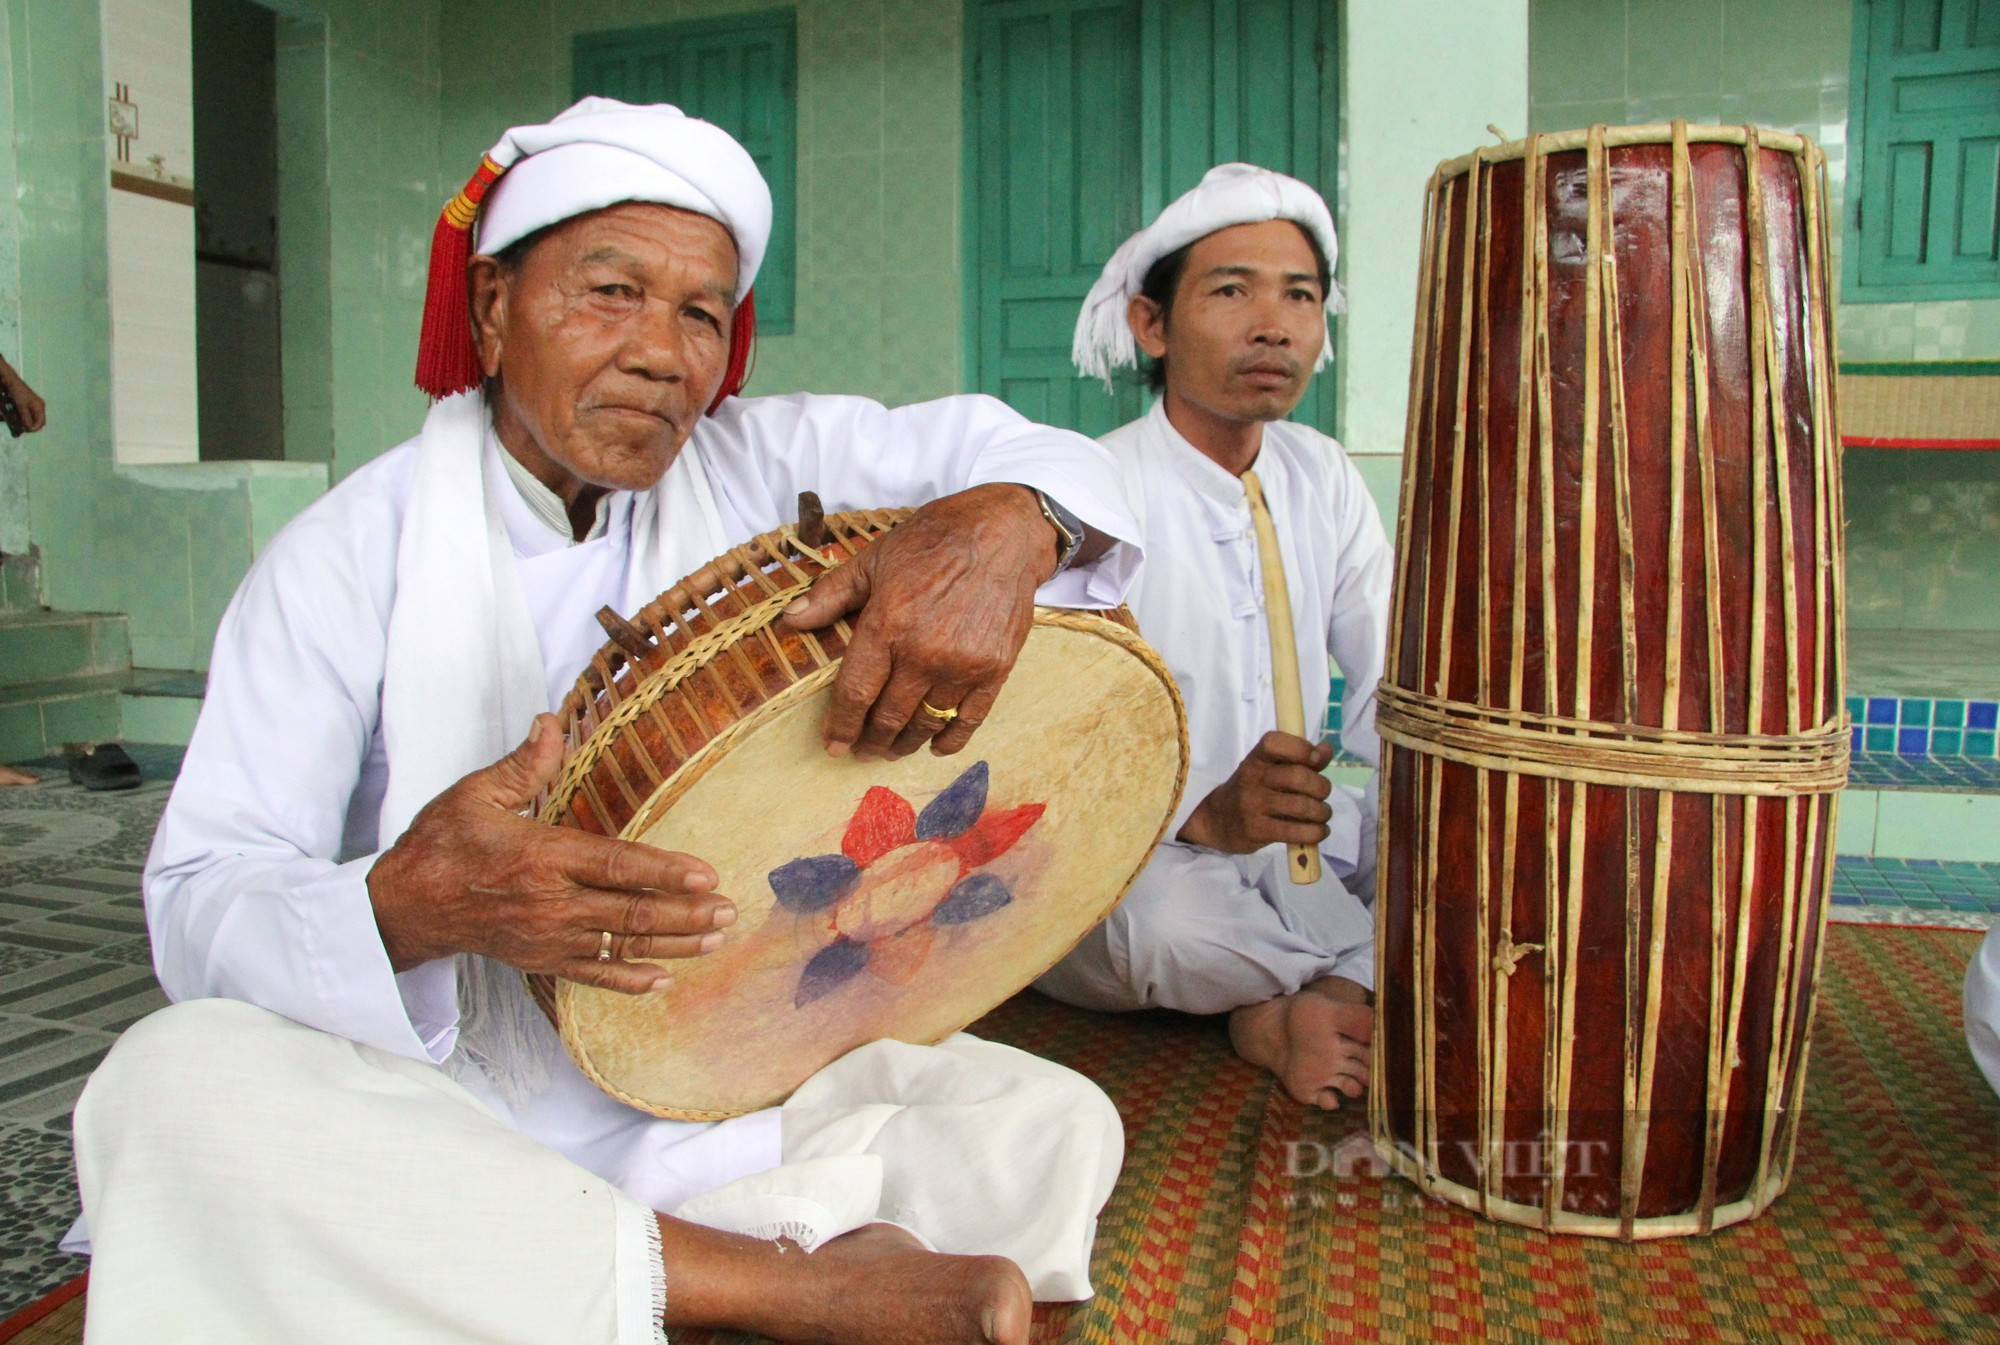 Bộ ba nhạc cụ ví như 3 phần của cơ thể con người không thể thiếu trong các lễ hội của người Chăm Ninh Thuận - Ảnh 3.